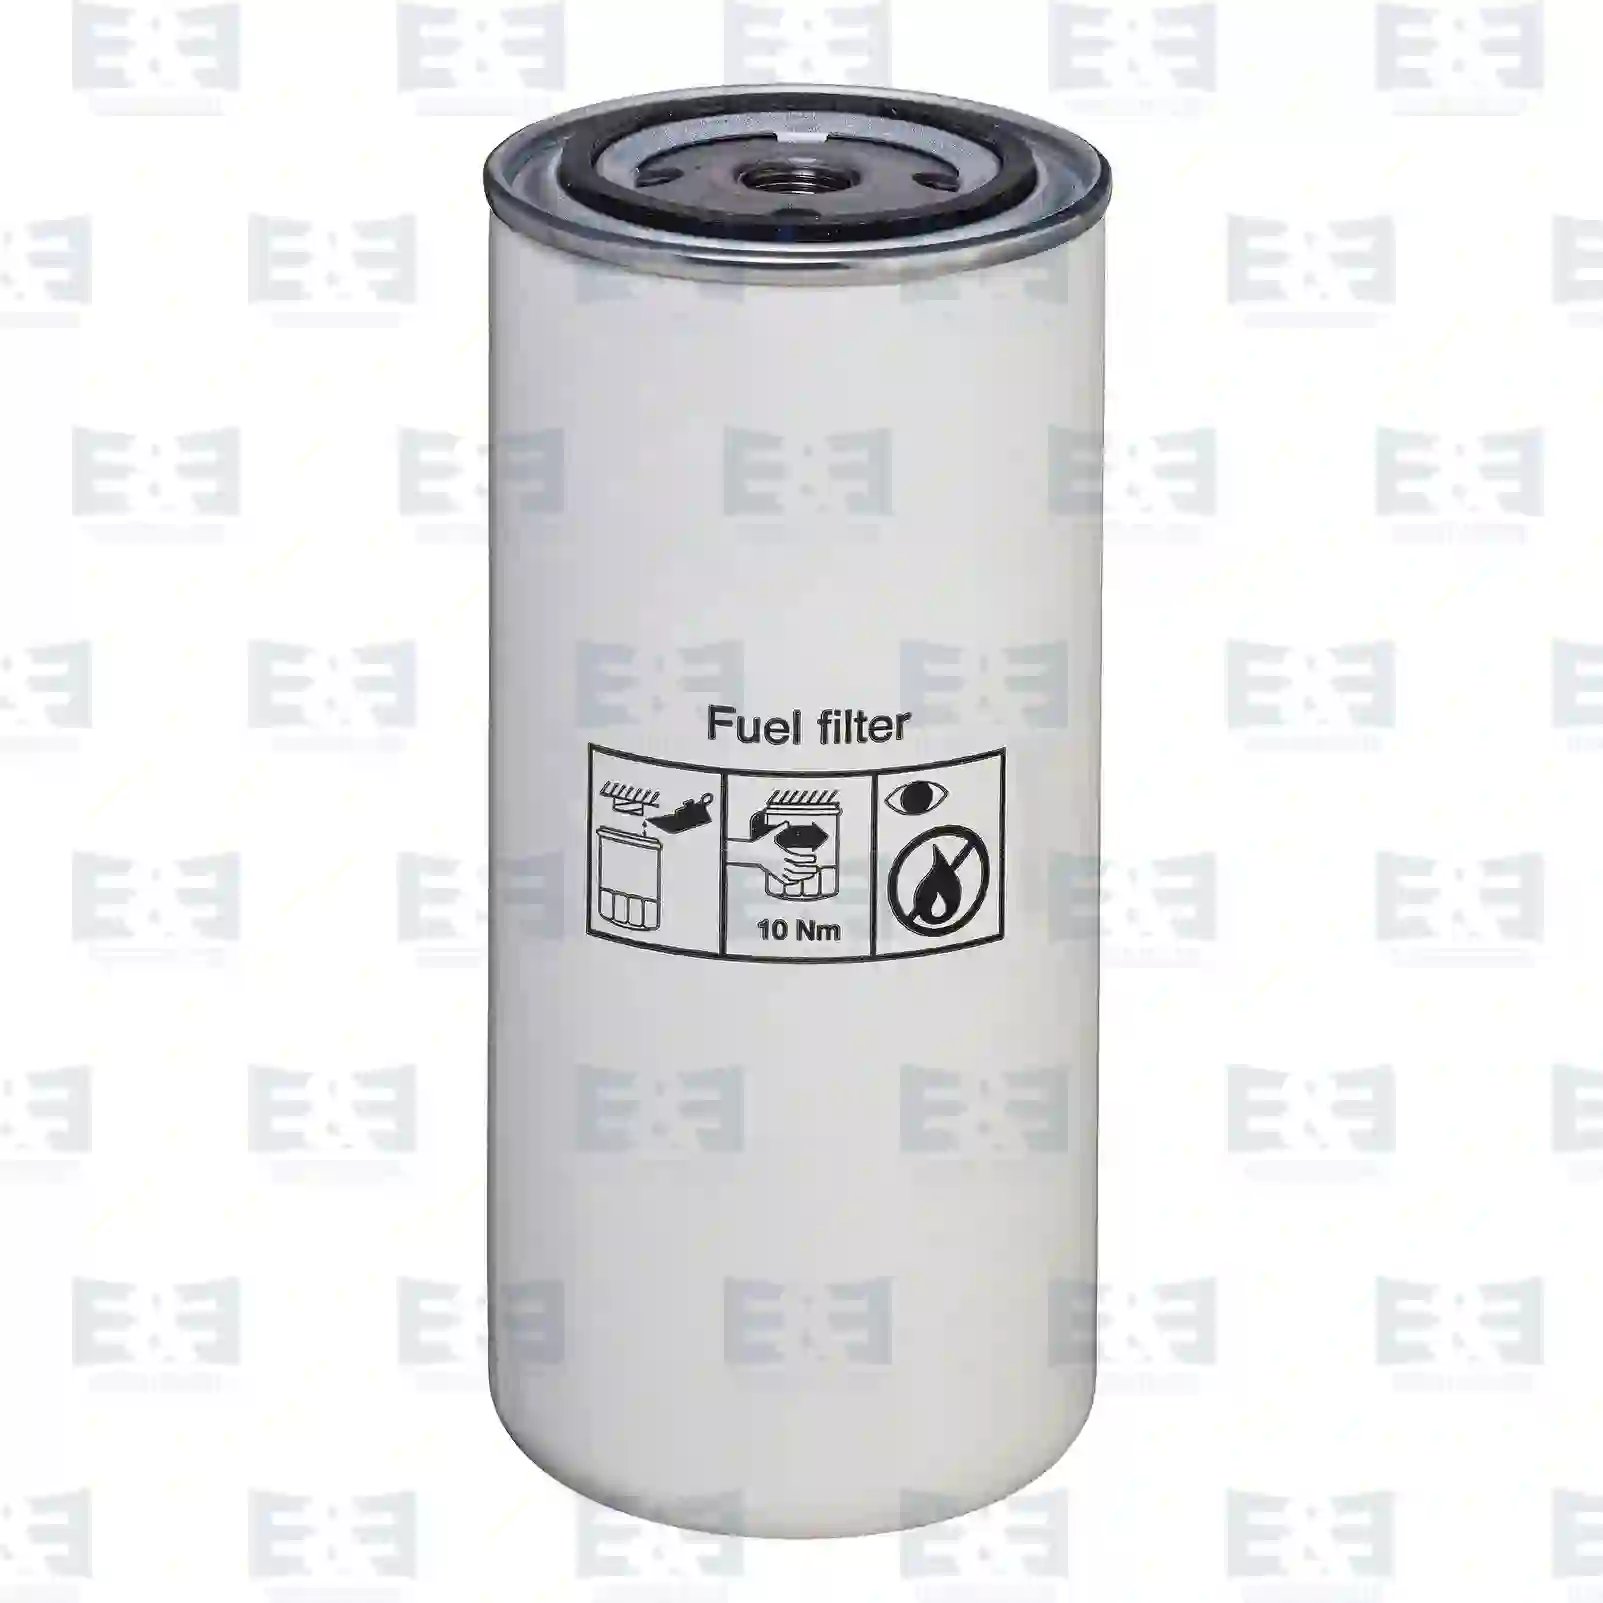 Fuel filter, 2E2287171, DNP550372, 2191P550372, 5021107668, 420799, 4207993, 4207999, 80676462, 8193841, 85114092, ZG10113-0008 ||  2E2287171 E&E Truck Spare Parts | Truck Spare Parts, Auotomotive Spare Parts Fuel filter, 2E2287171, DNP550372, 2191P550372, 5021107668, 420799, 4207993, 4207999, 80676462, 8193841, 85114092, ZG10113-0008 ||  2E2287171 E&E Truck Spare Parts | Truck Spare Parts, Auotomotive Spare Parts